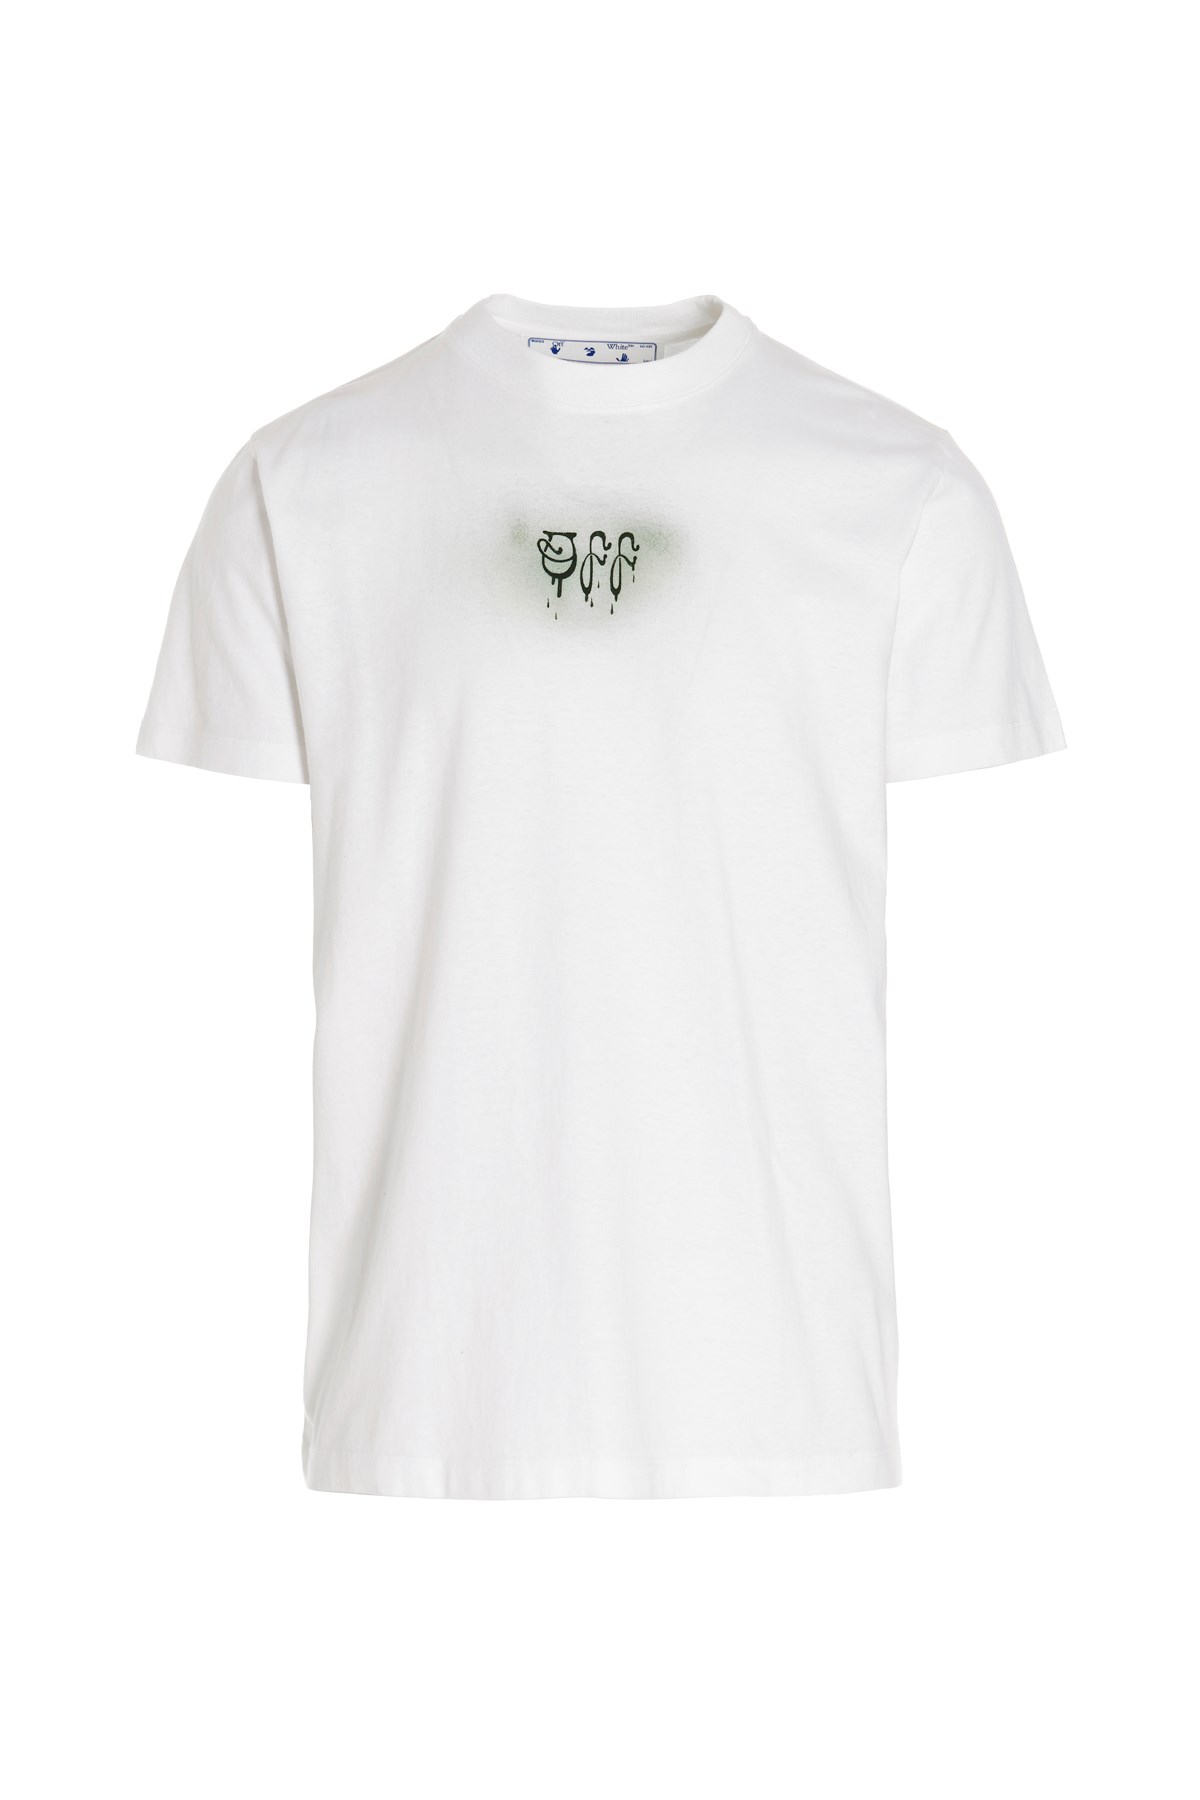 OFF-WHITE Off-White Baby Brush Capsule T-Shirt